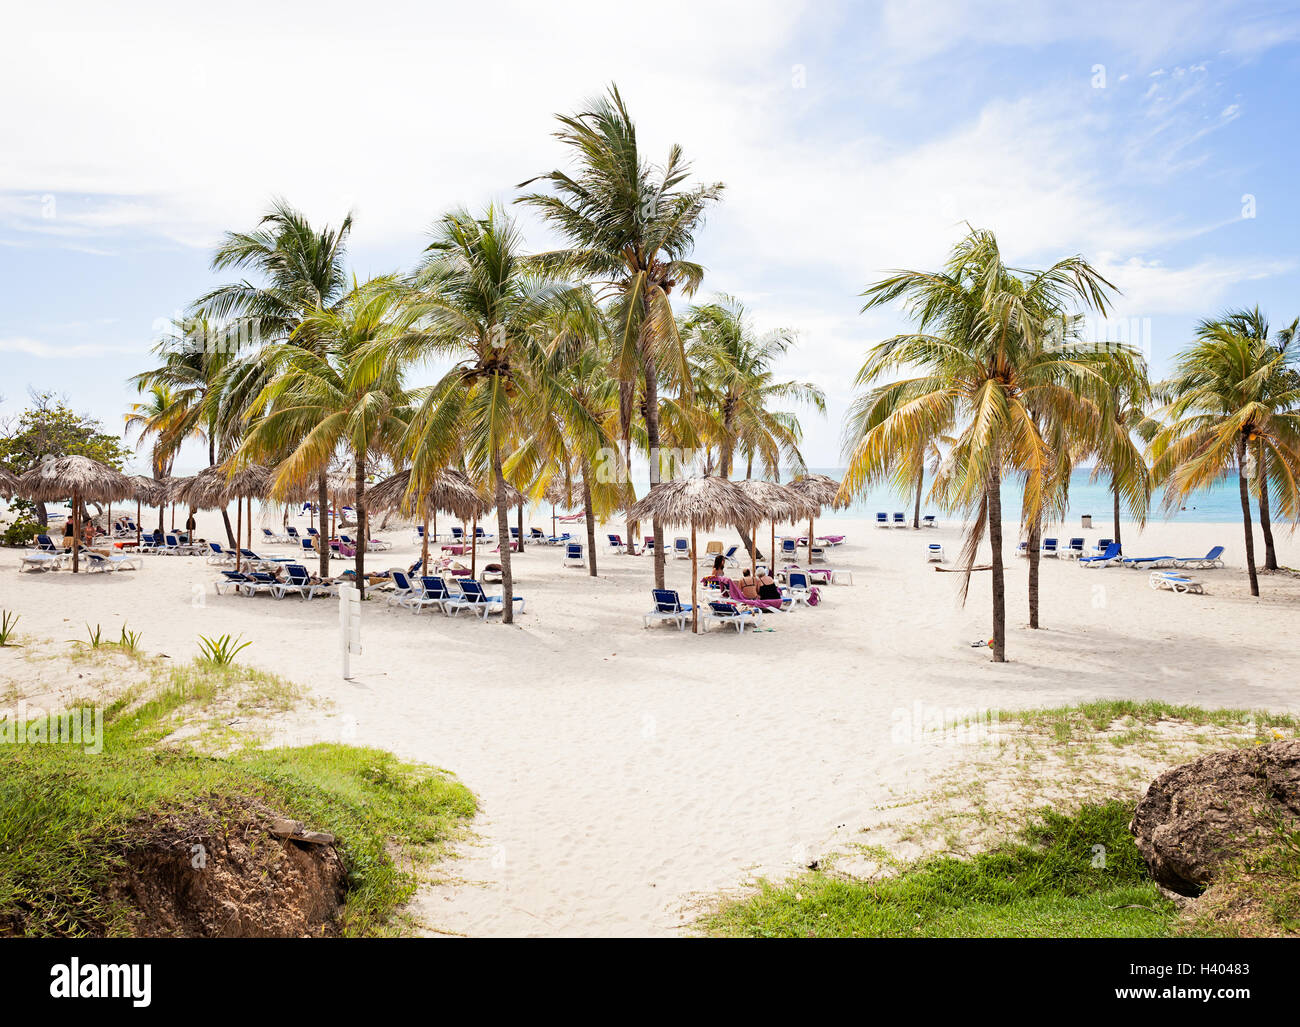 Beautiful resort beach in Varadero Cuba Stock Photo